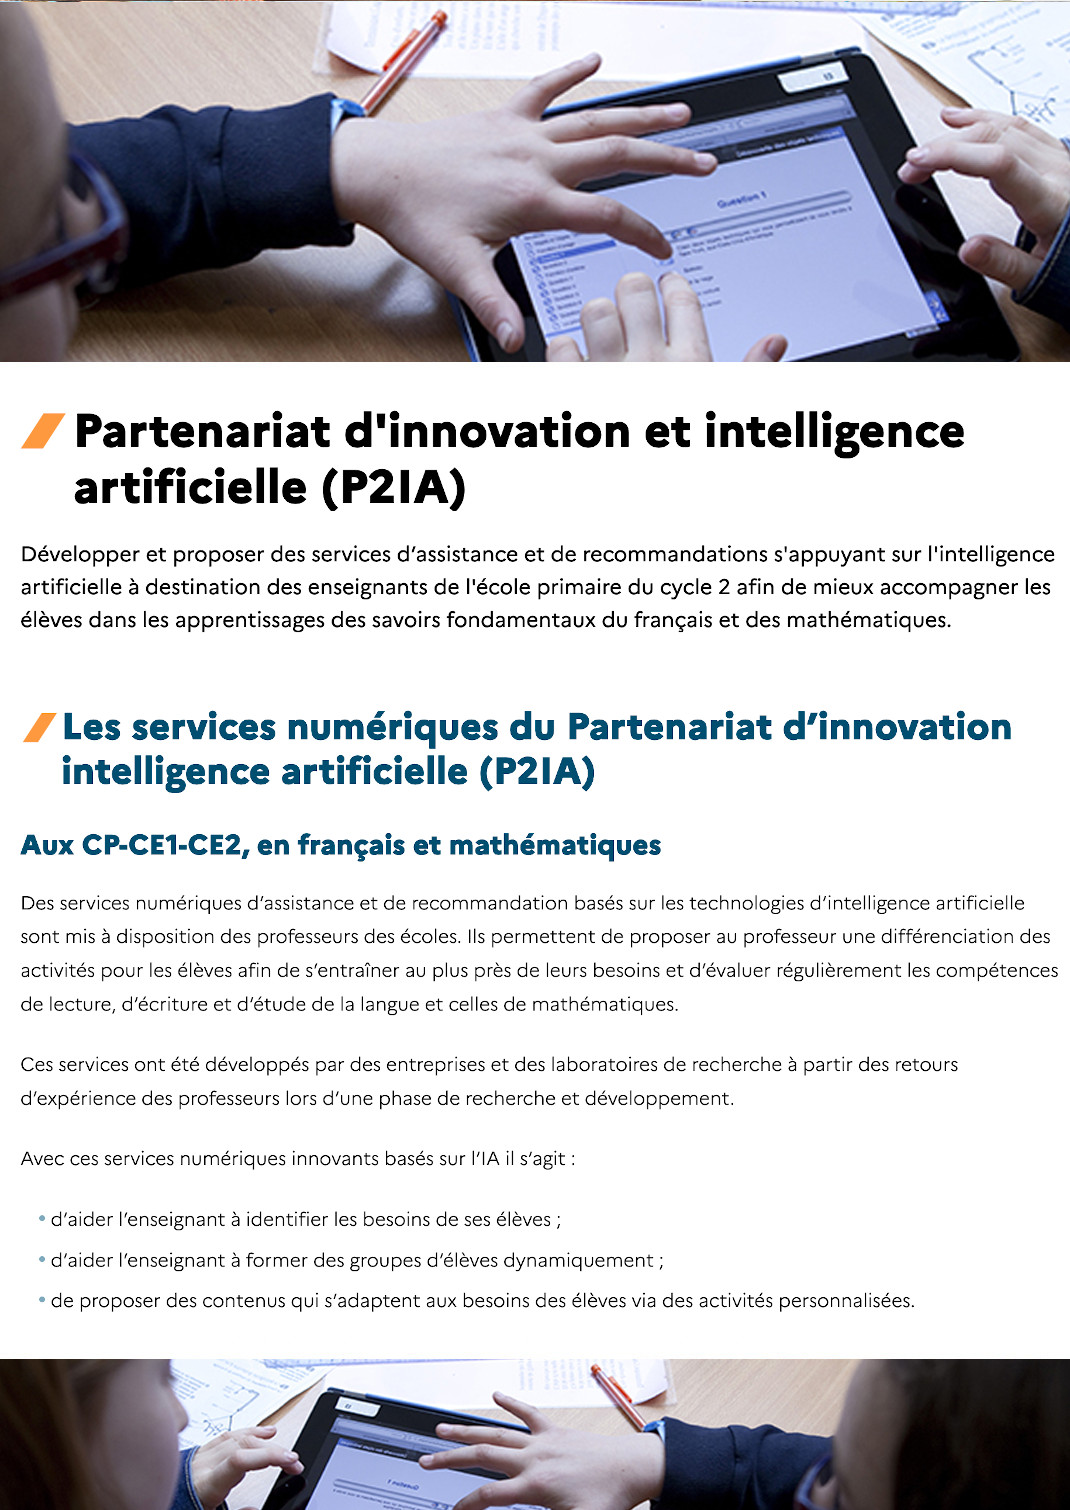 Partenariat d'innovation et intelligence artificielle (P2IA)